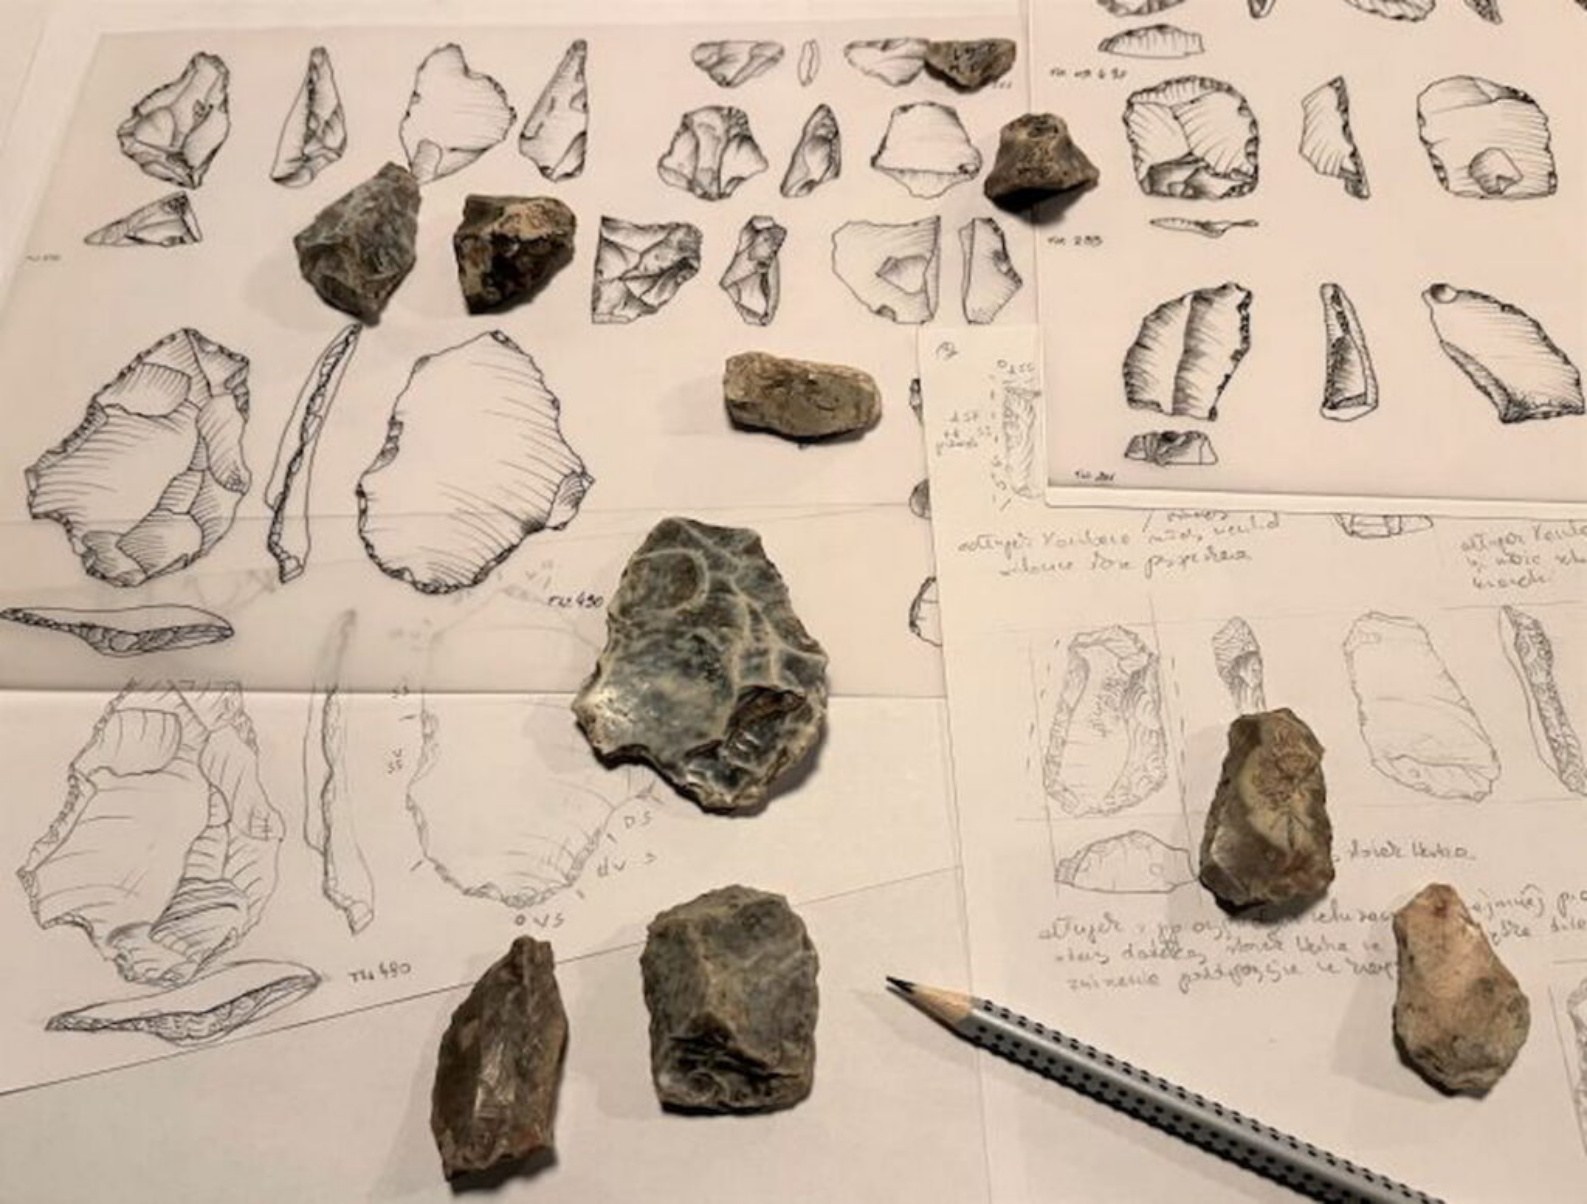 来自 Tunel Wielki 洞穴的燧石手工艺品，可能由 Homo heildelbergensis 在 XNUMX 万年前制造。